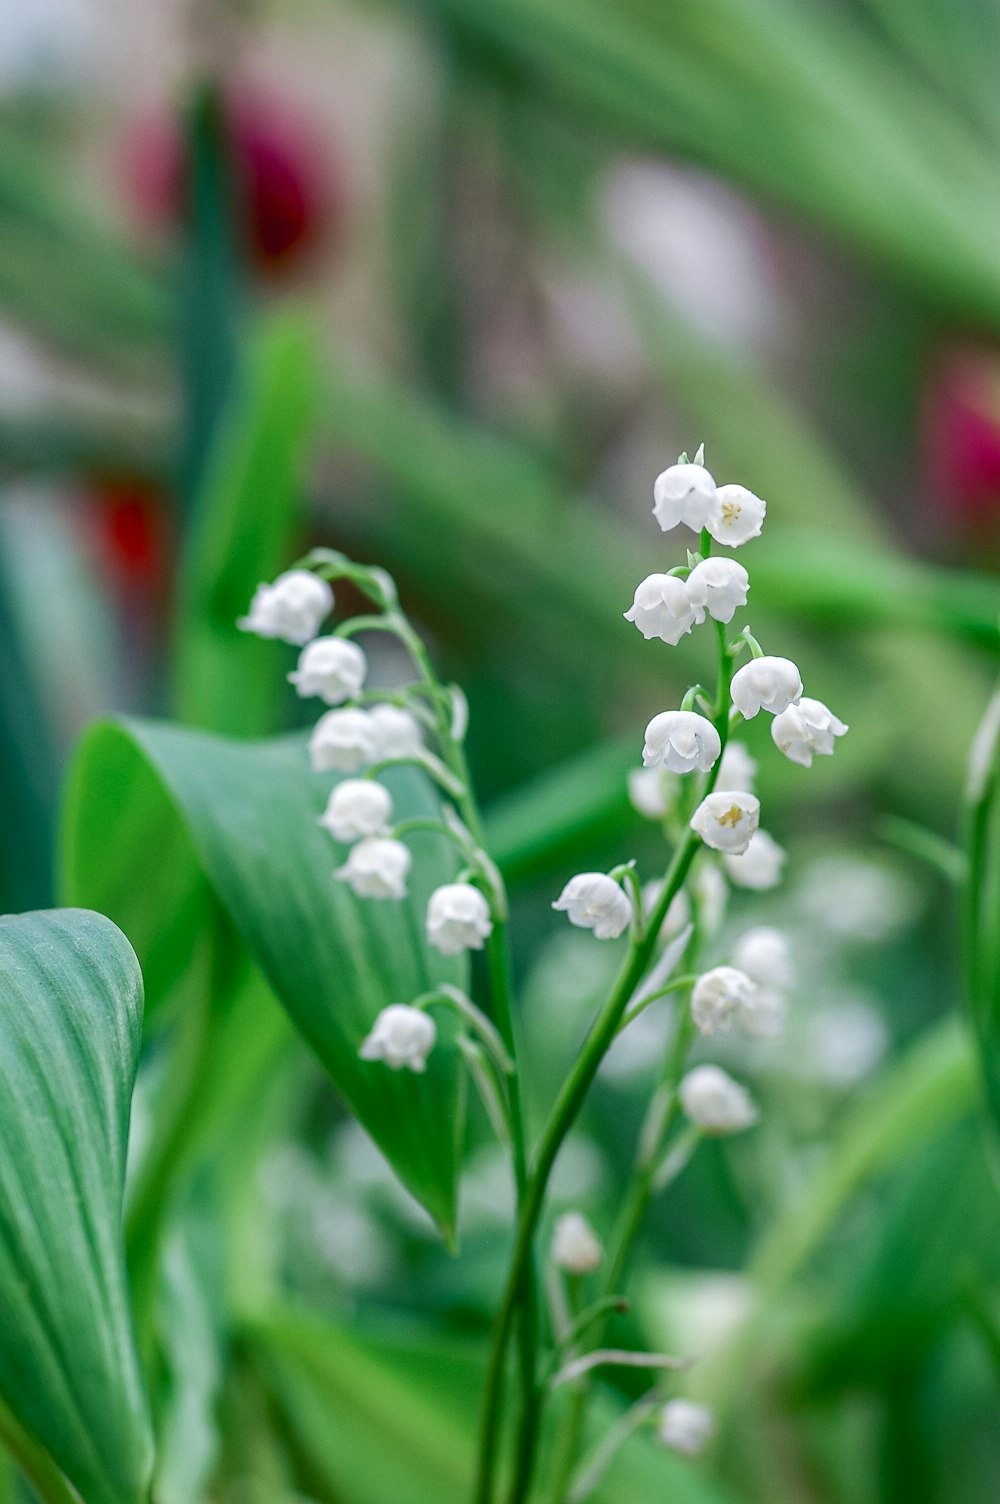 white flower buds in tilt shift lens